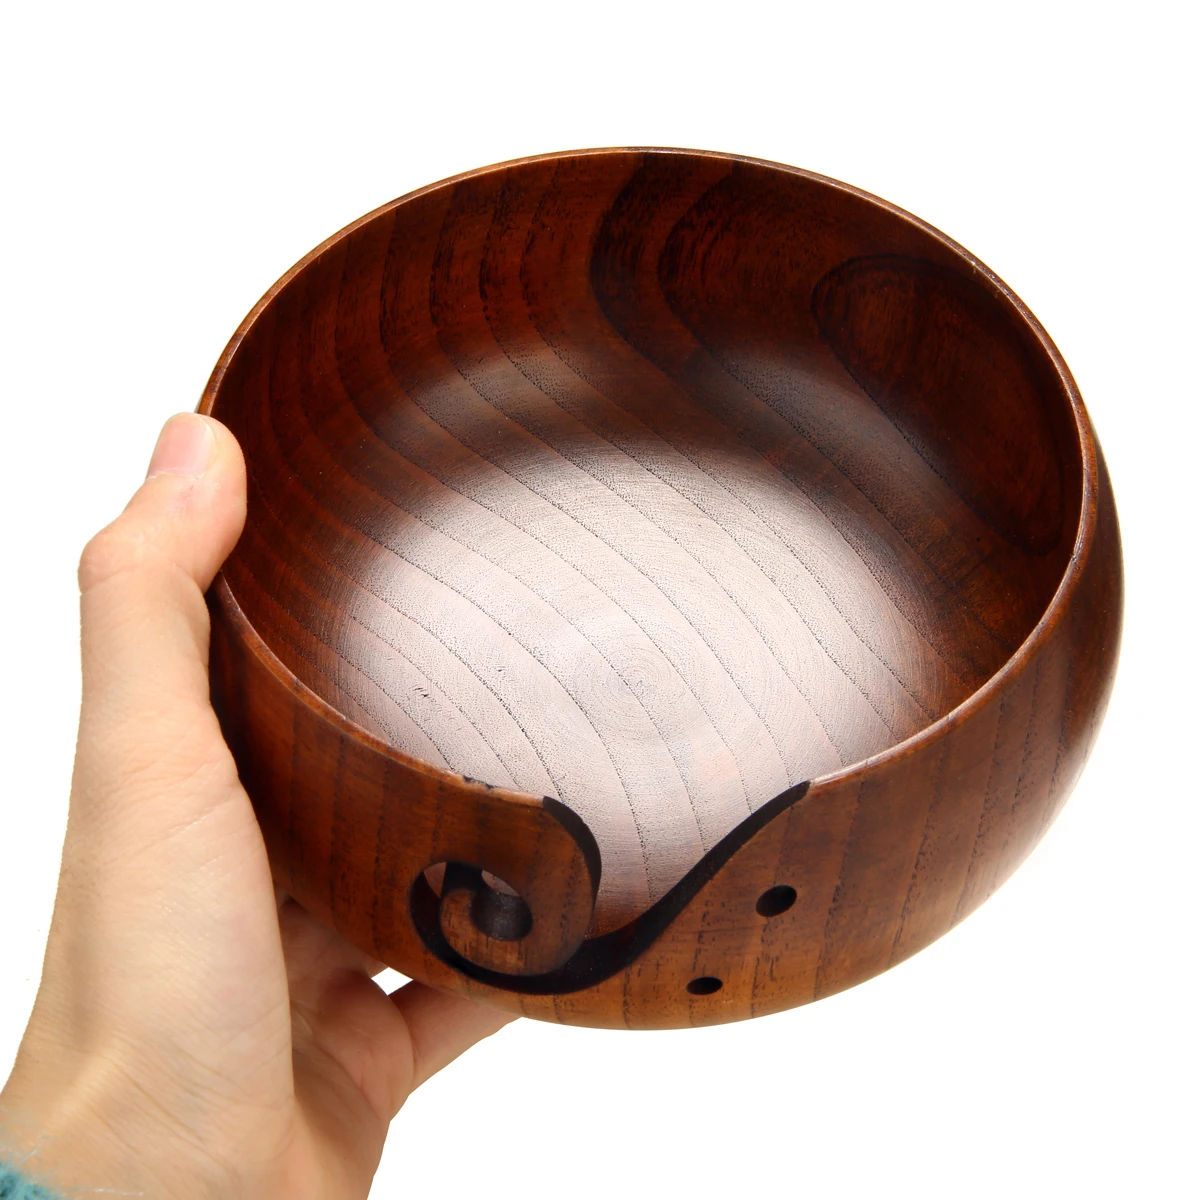 14-15 см ручная работа деревянная пряжа для вязания крючком для хранения чаши для вязания игл держатель для хранения для домашних принадлежностей